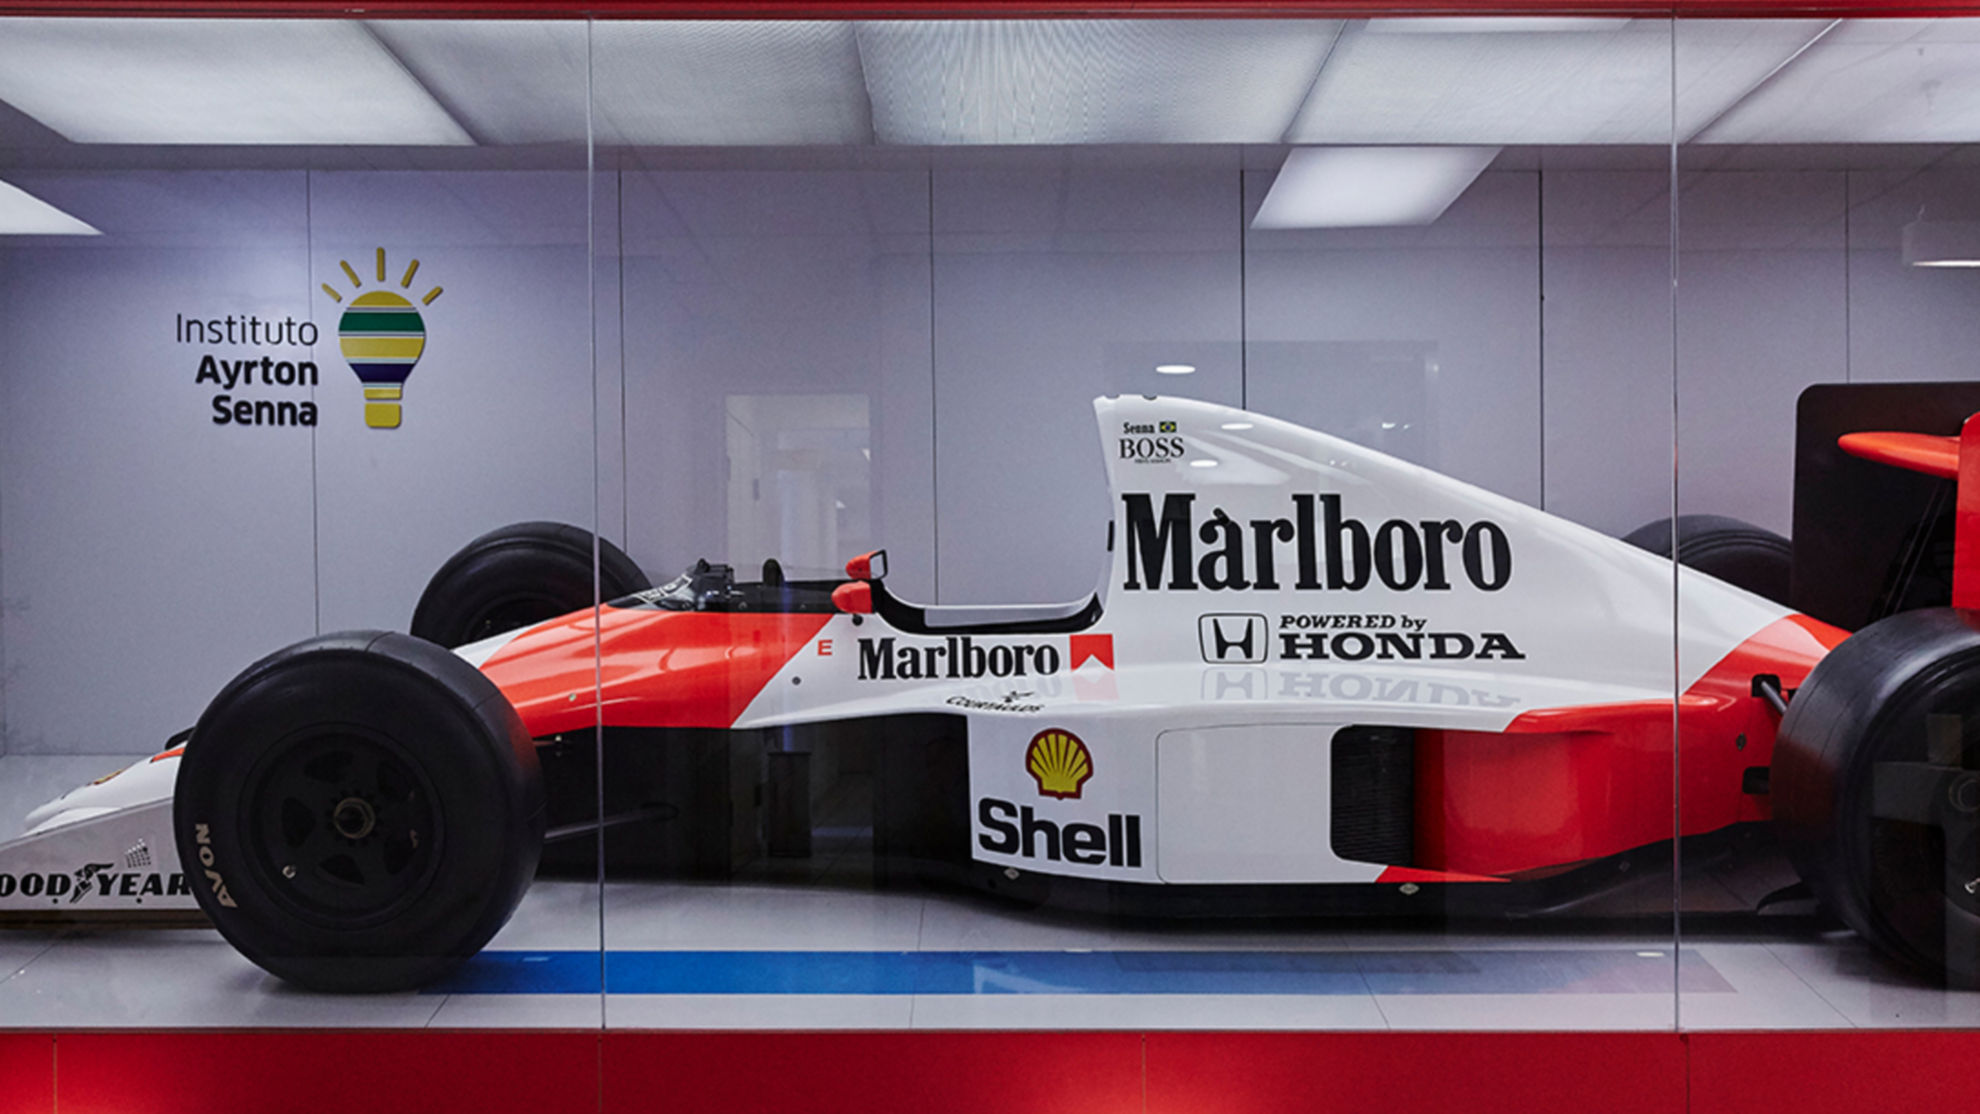 McLaren Senna - The Ayrton Senna Institute, McLaren Automotive